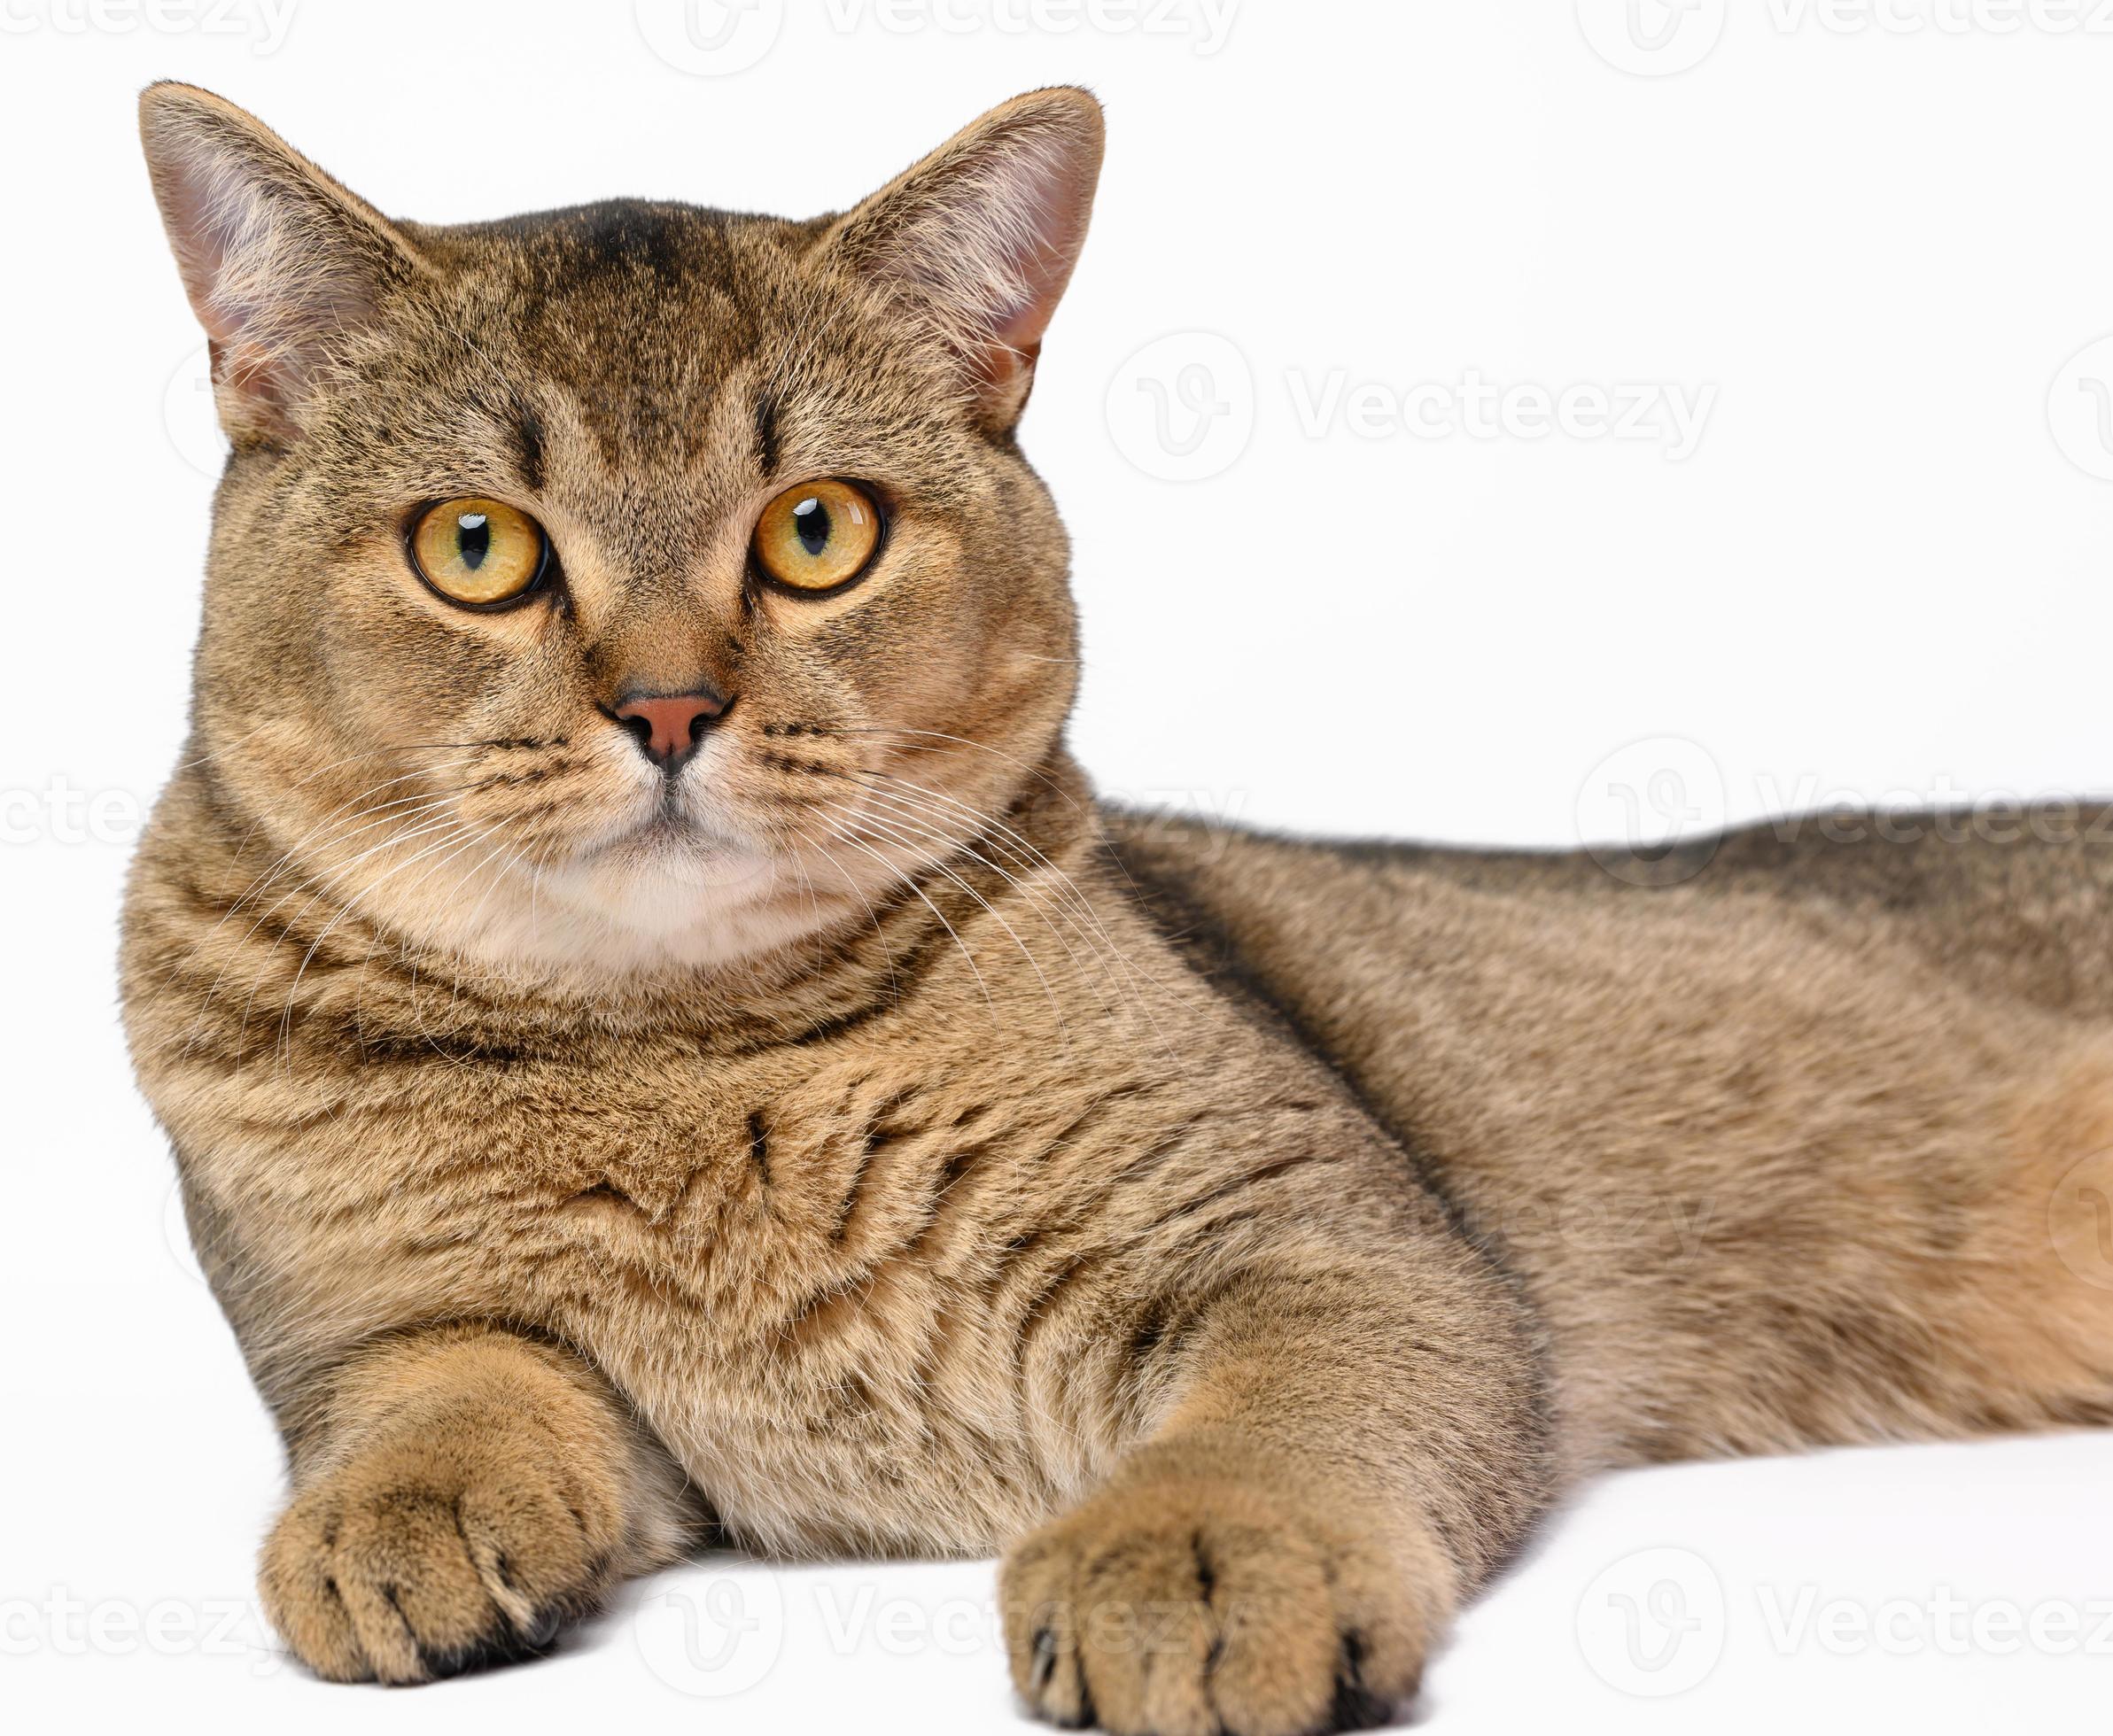 volwassen grijs Schots Rechtdoor chinchilla kat leugens Aan een wit achtergrond, dier is resting 19032668 stockfoto Vecteezy